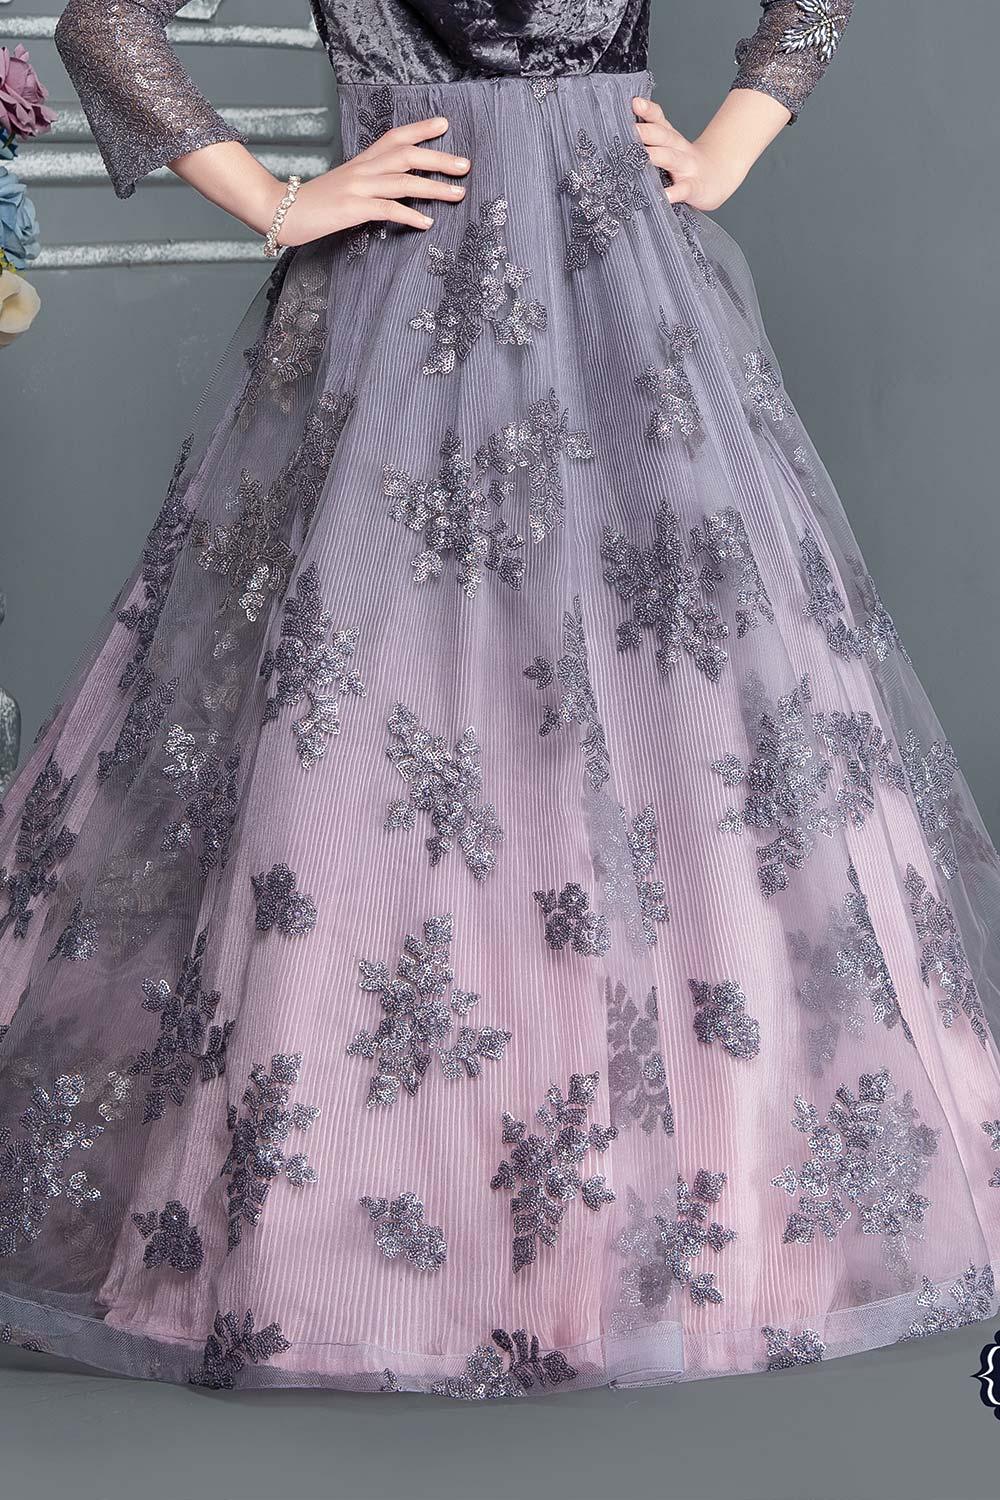 Silk Dress Designer Bollywood Gown Women Pakistani Party Wear Etenic Dress  | eBay